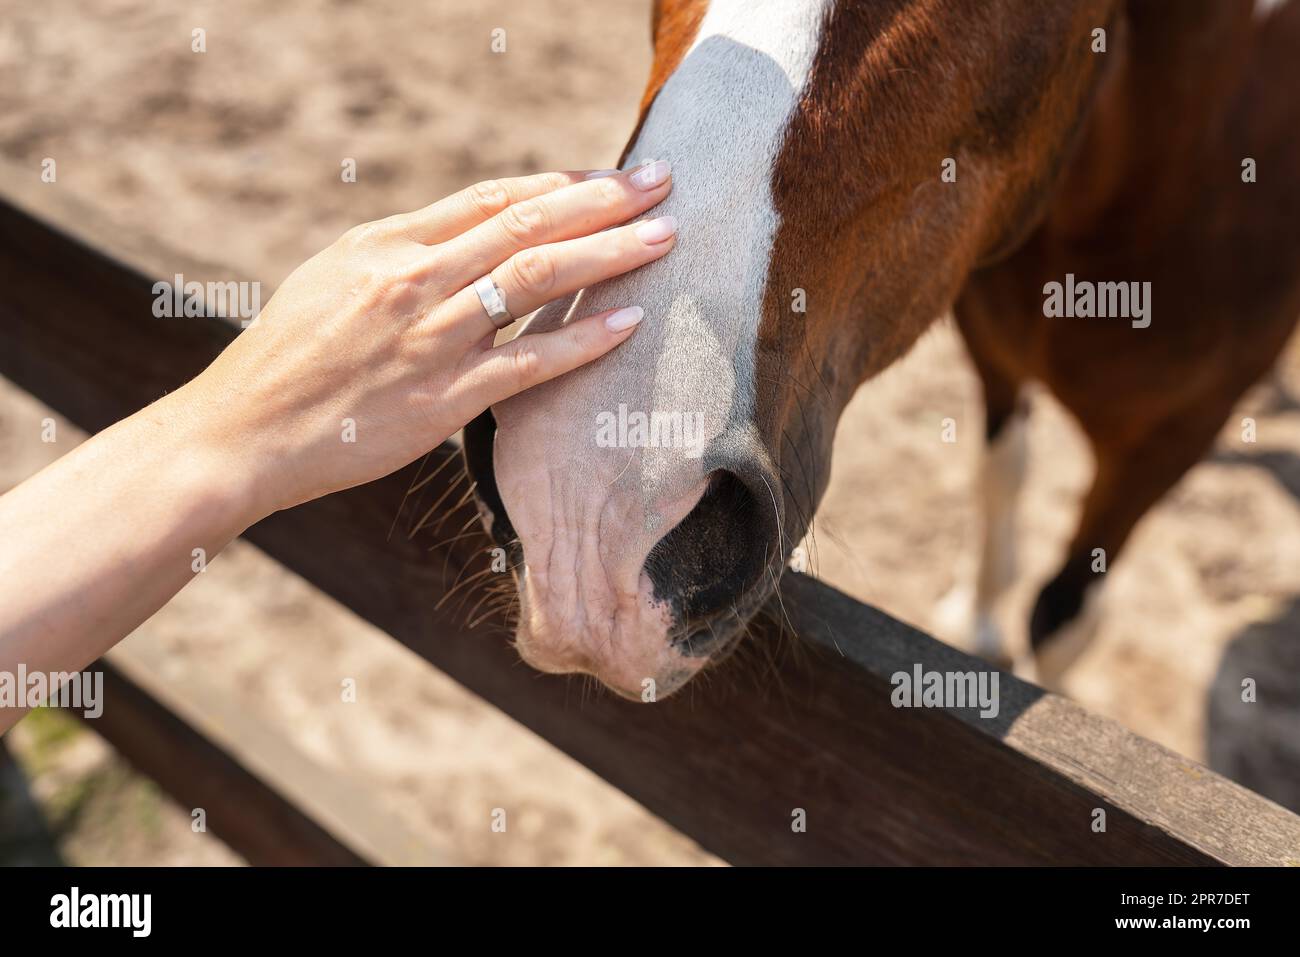 Dunkles Bay Horse in Paddock an einem sonnigen Tag. Wunderschönes Haustier, Reiten, Streichelzoo, Tierbehandlung. Stockfoto